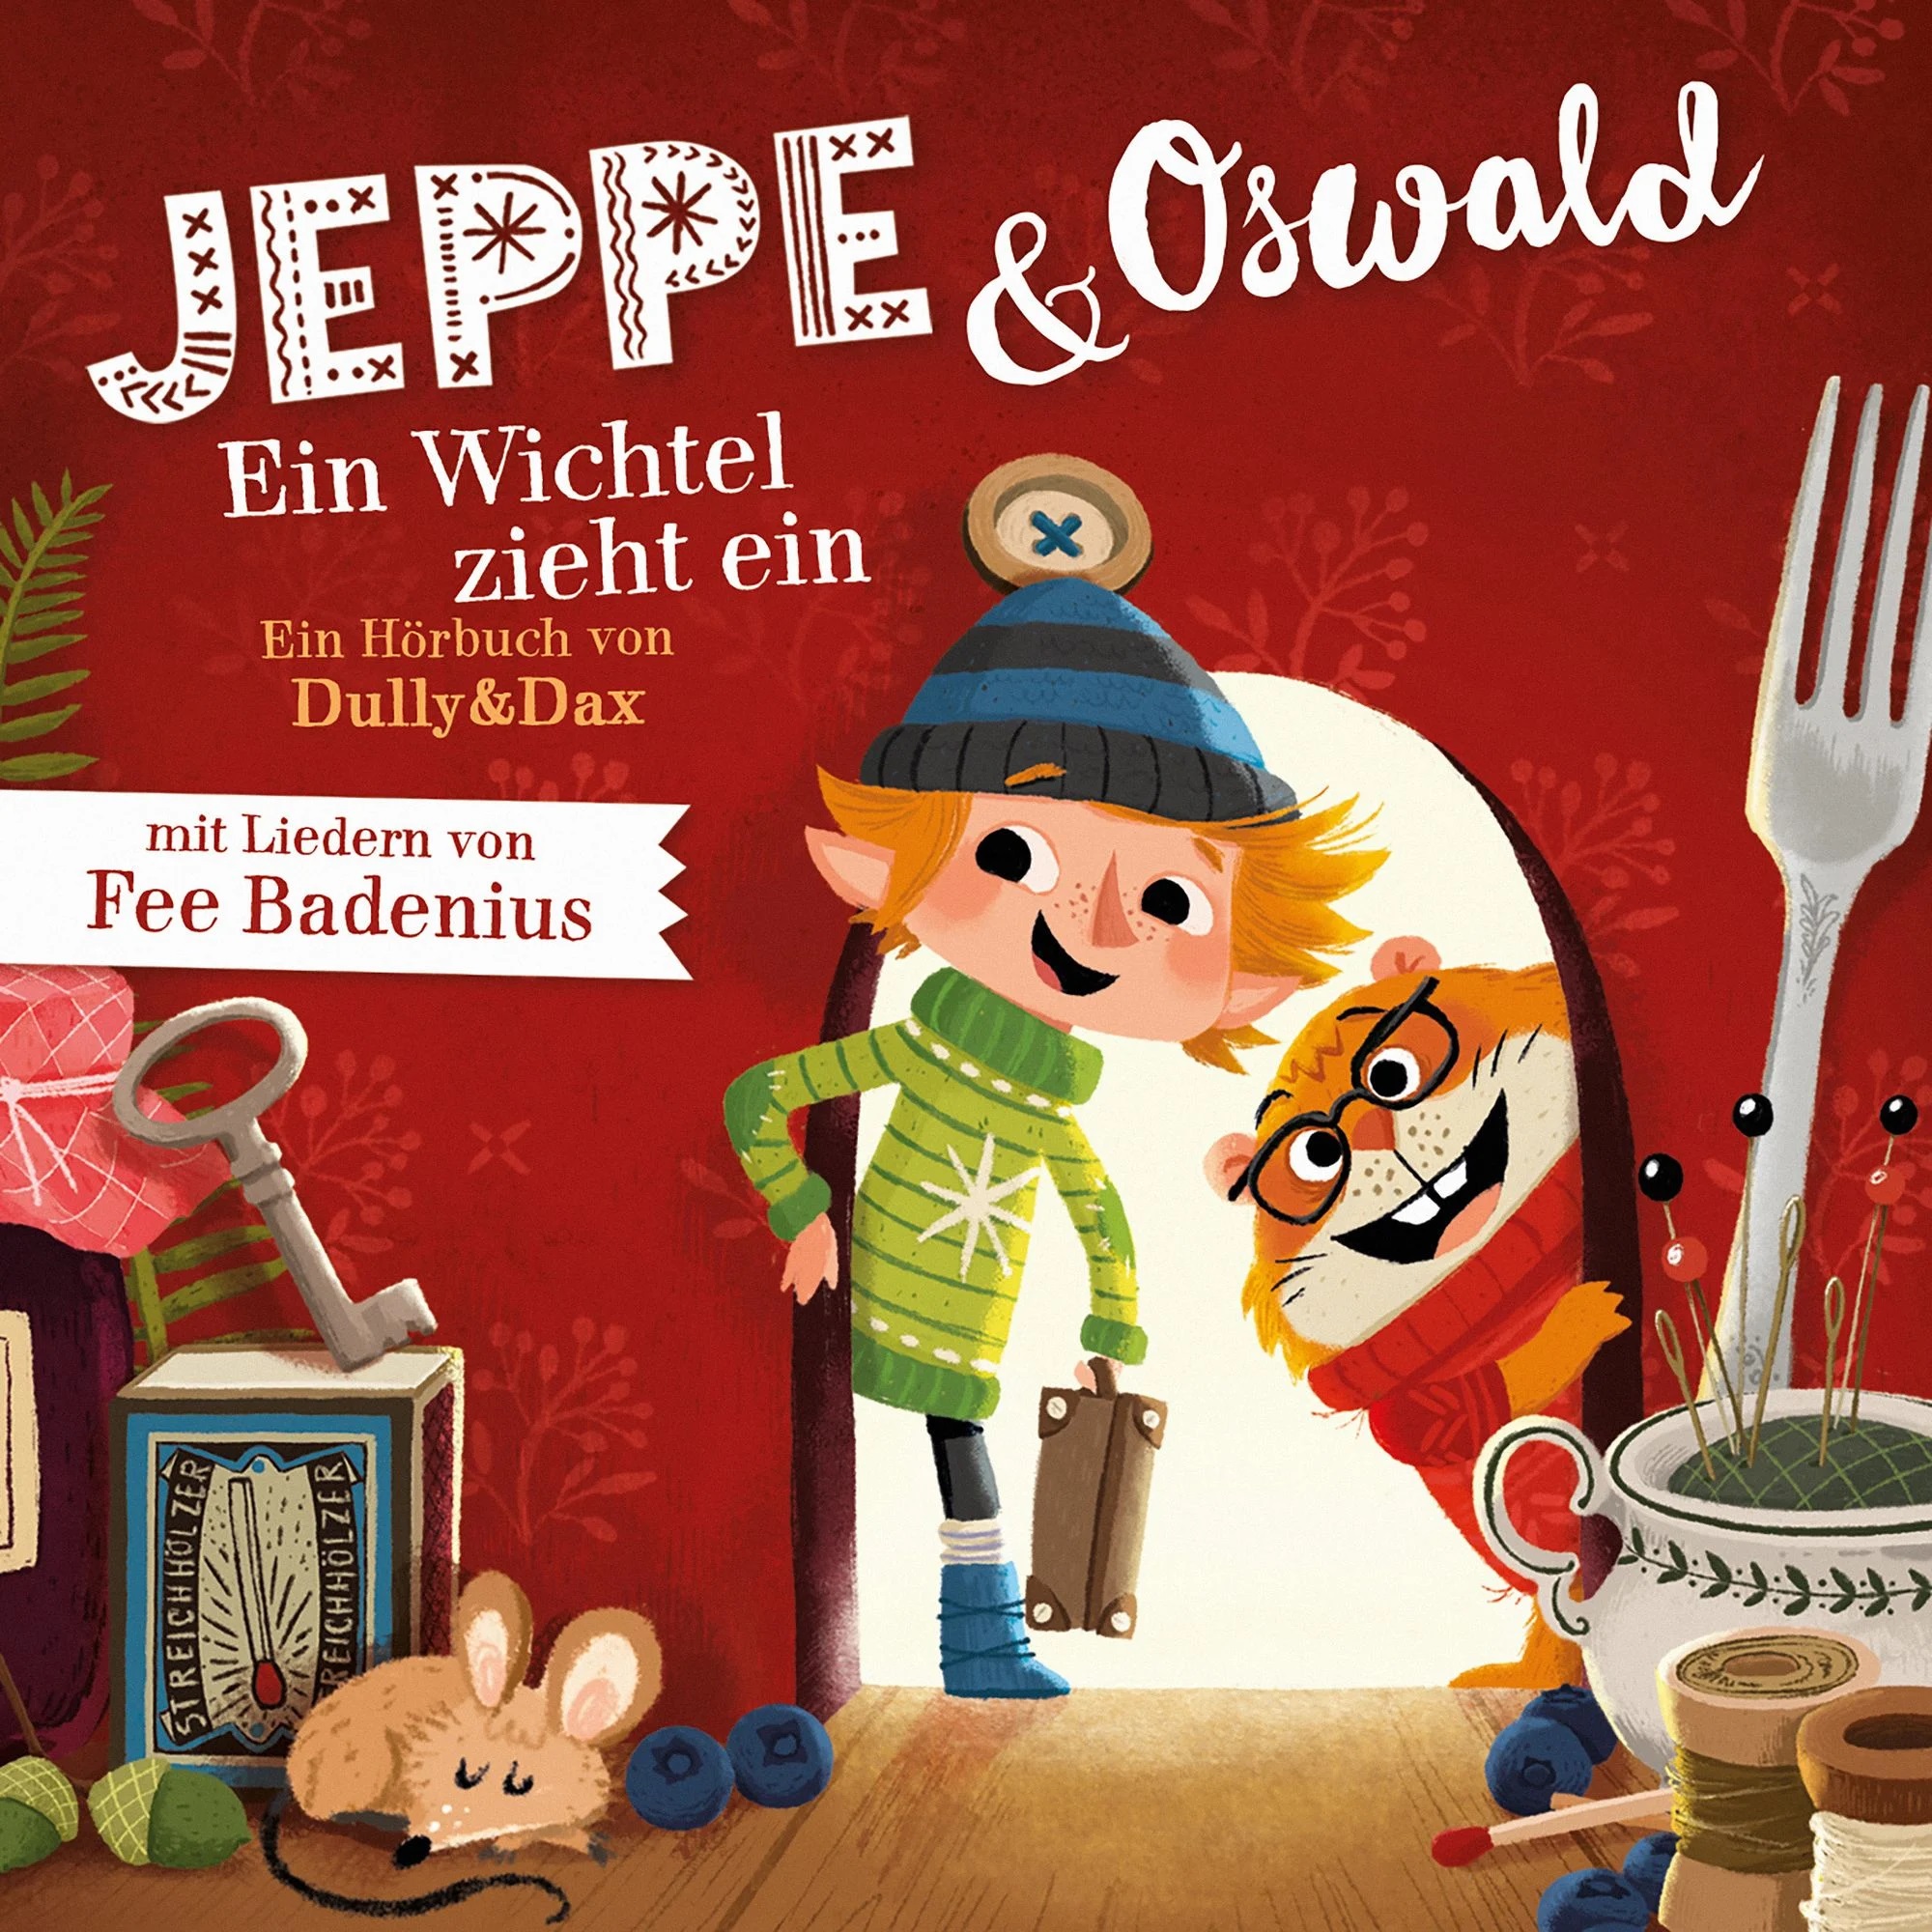 Hörbuch: Jeppe & Oswald – Ein Wichtel zieht ein